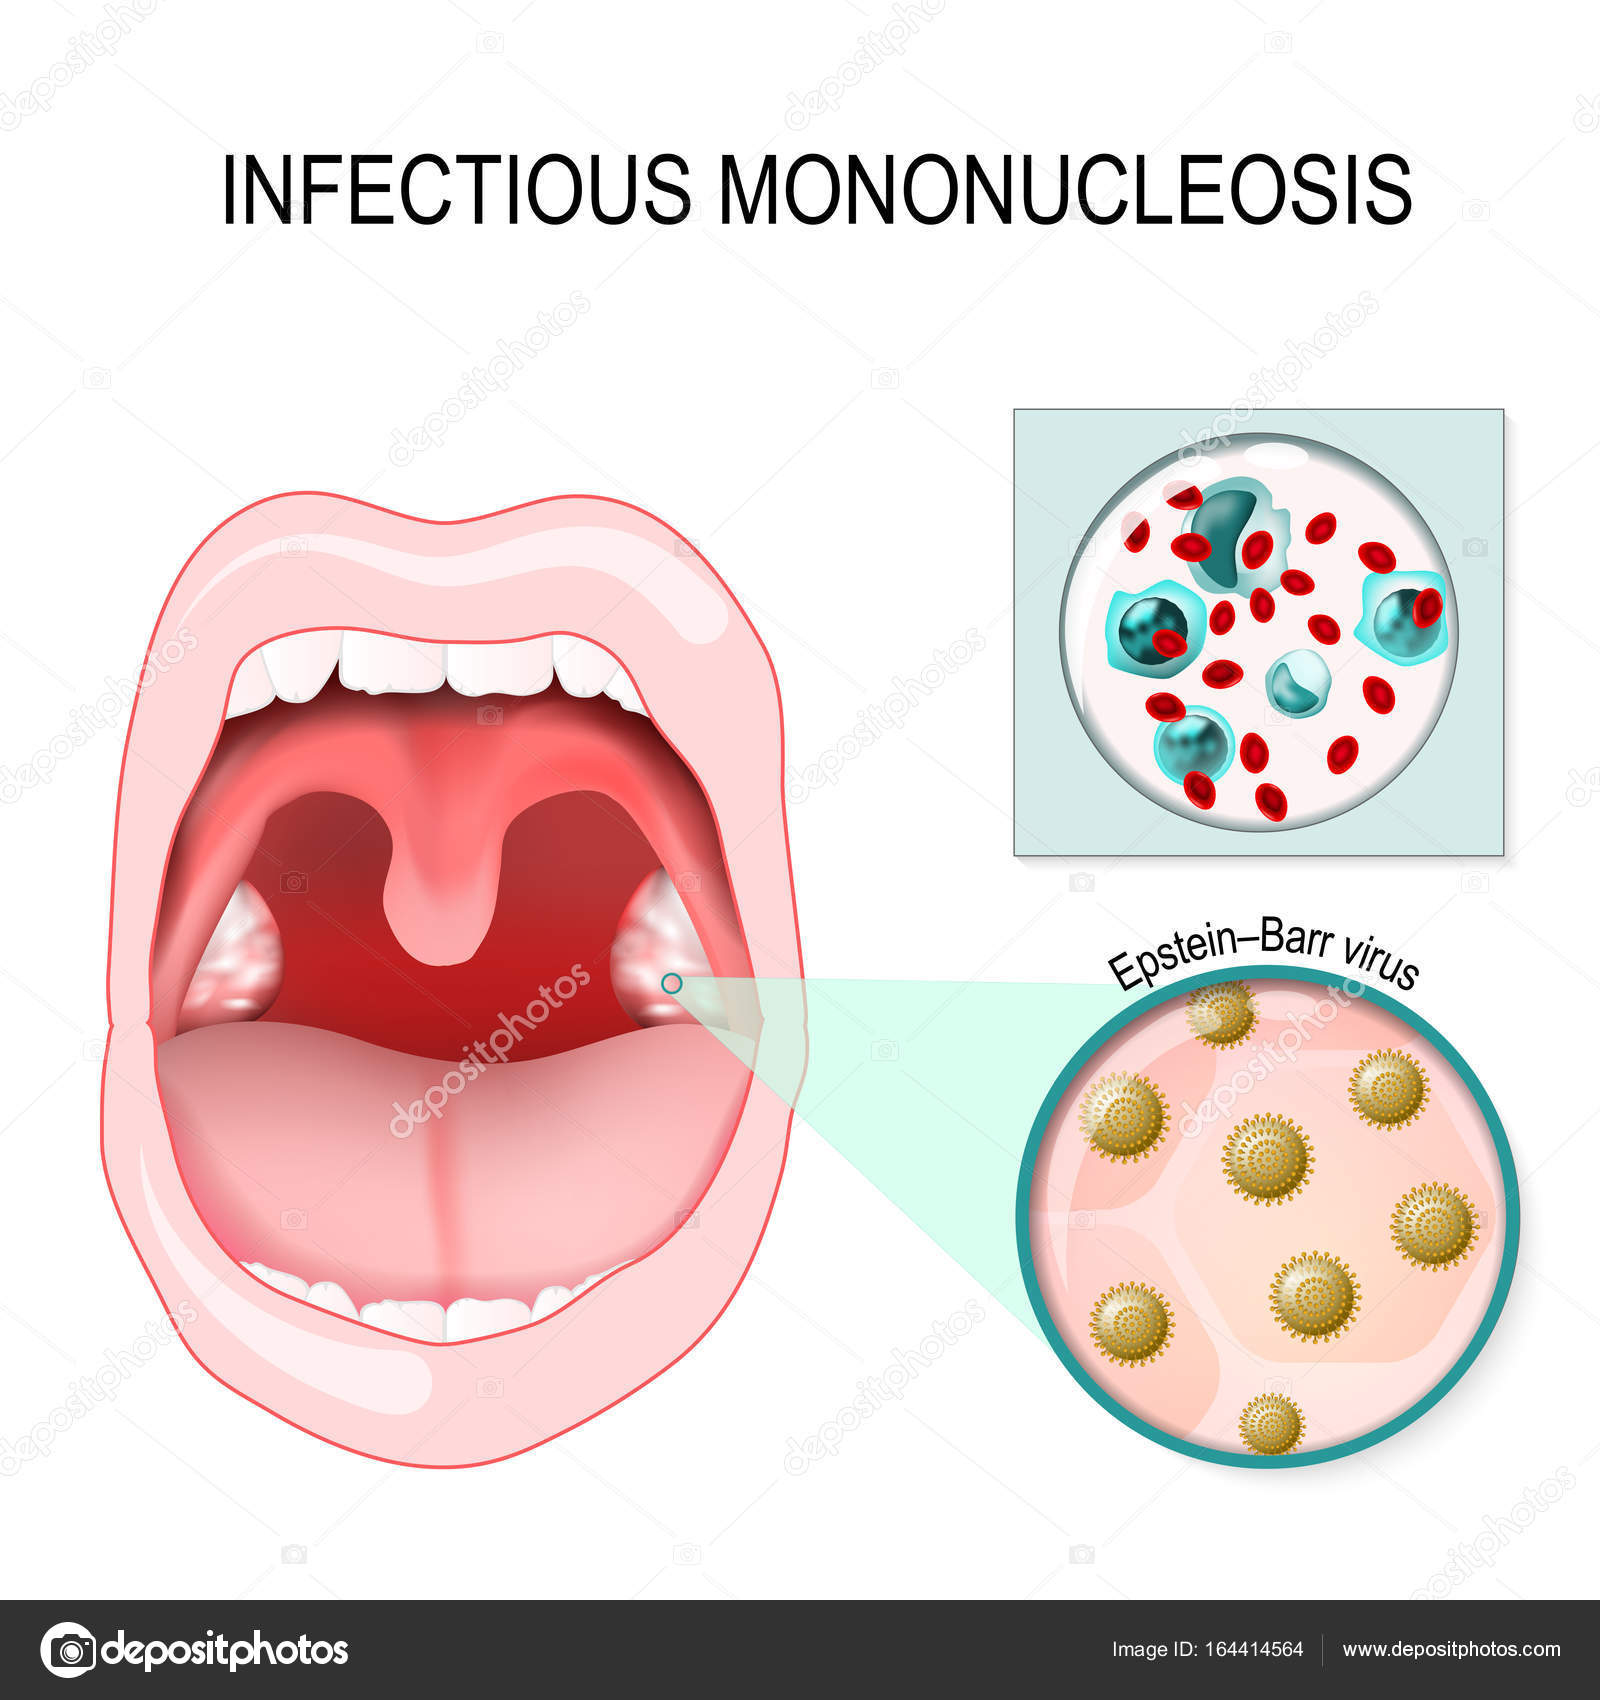 Мононуклеоз вирус эпштейна. Мононуклеоз Эпштейна-Барр. Инфекционный мононуклеоз (инфекция вирусом Эпштейна — Барра).